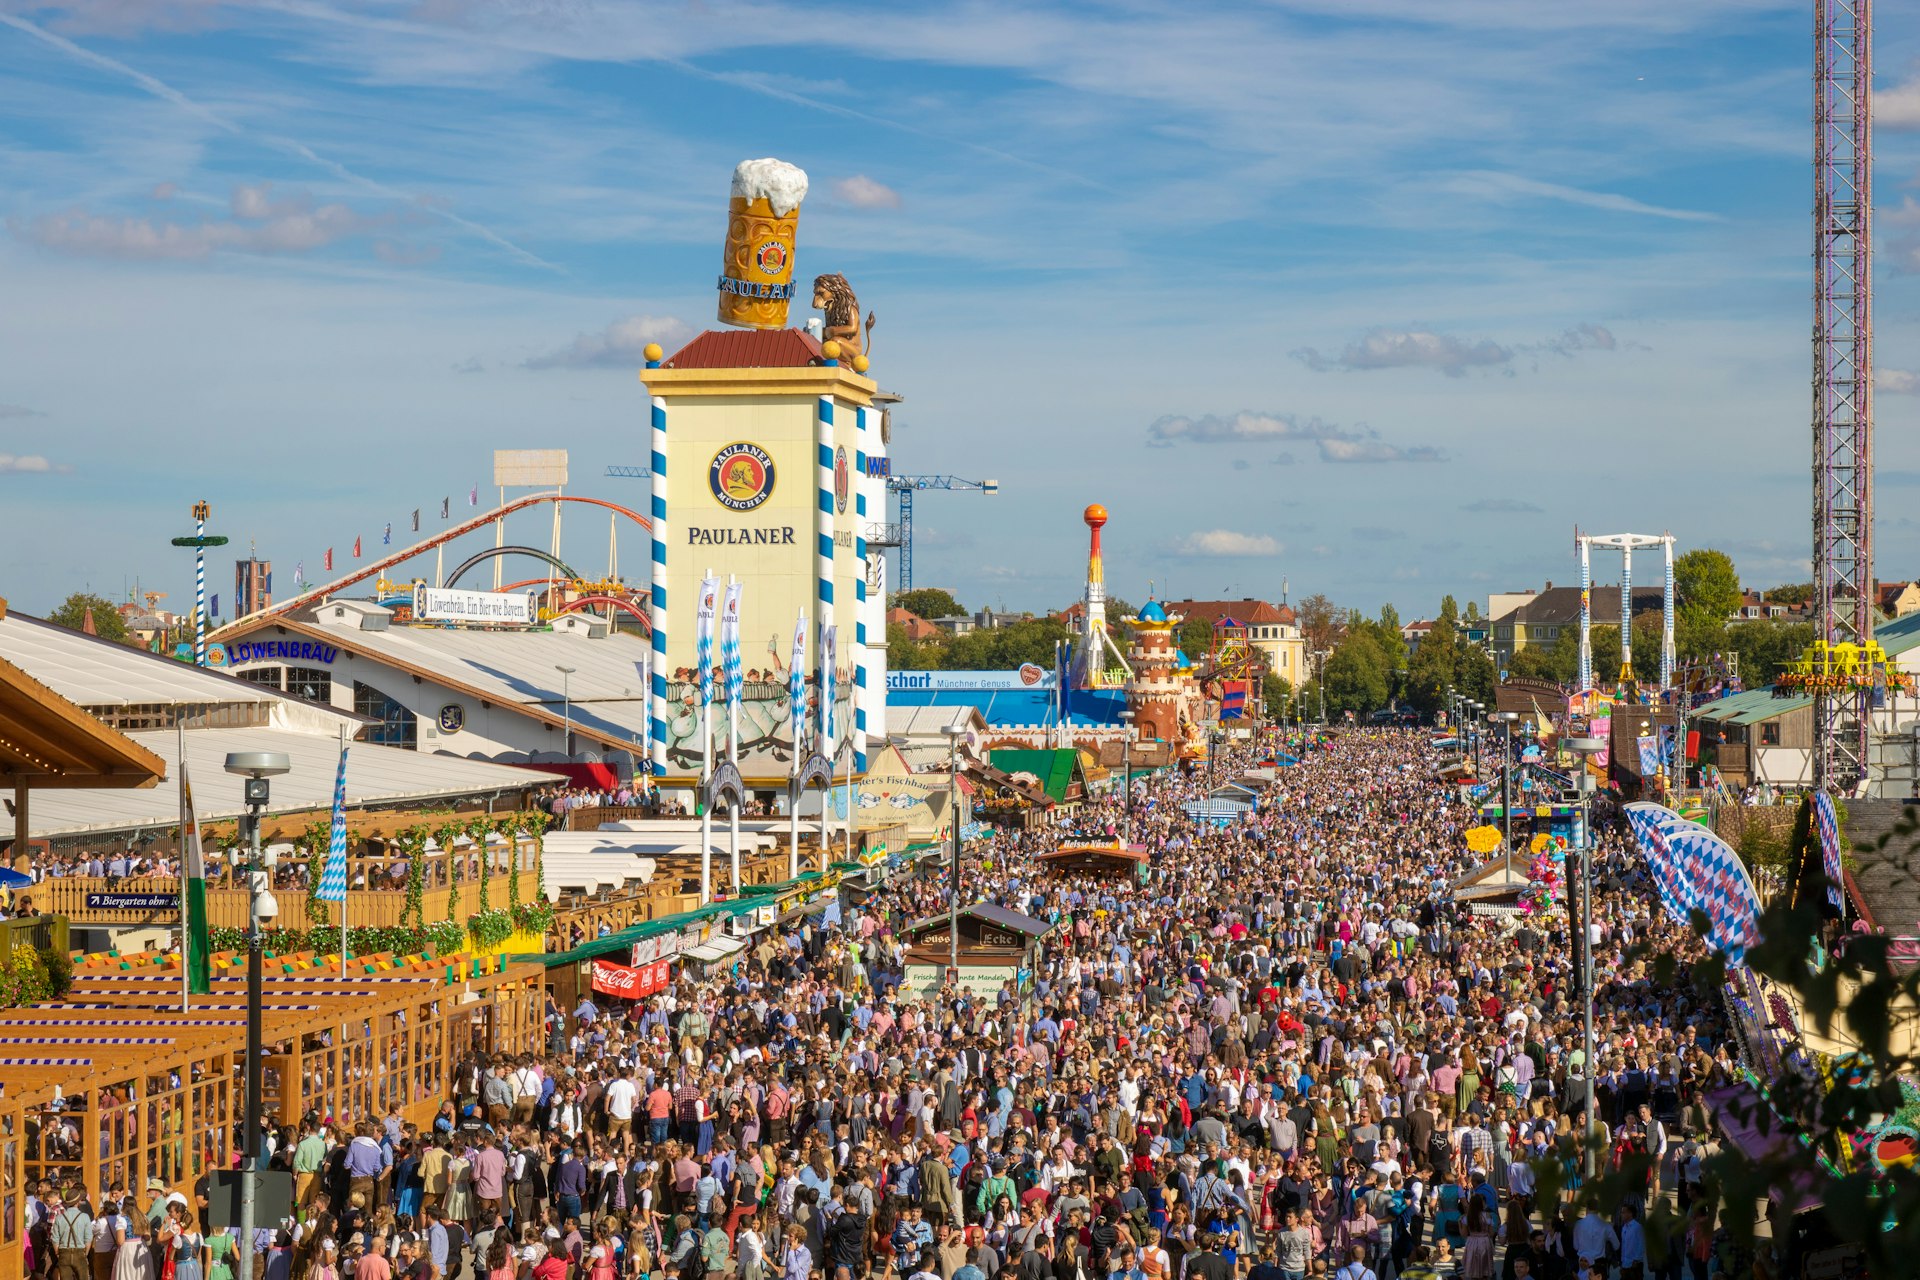 Multidões de pessoas em um festival de cerveja em um dia ensolarado